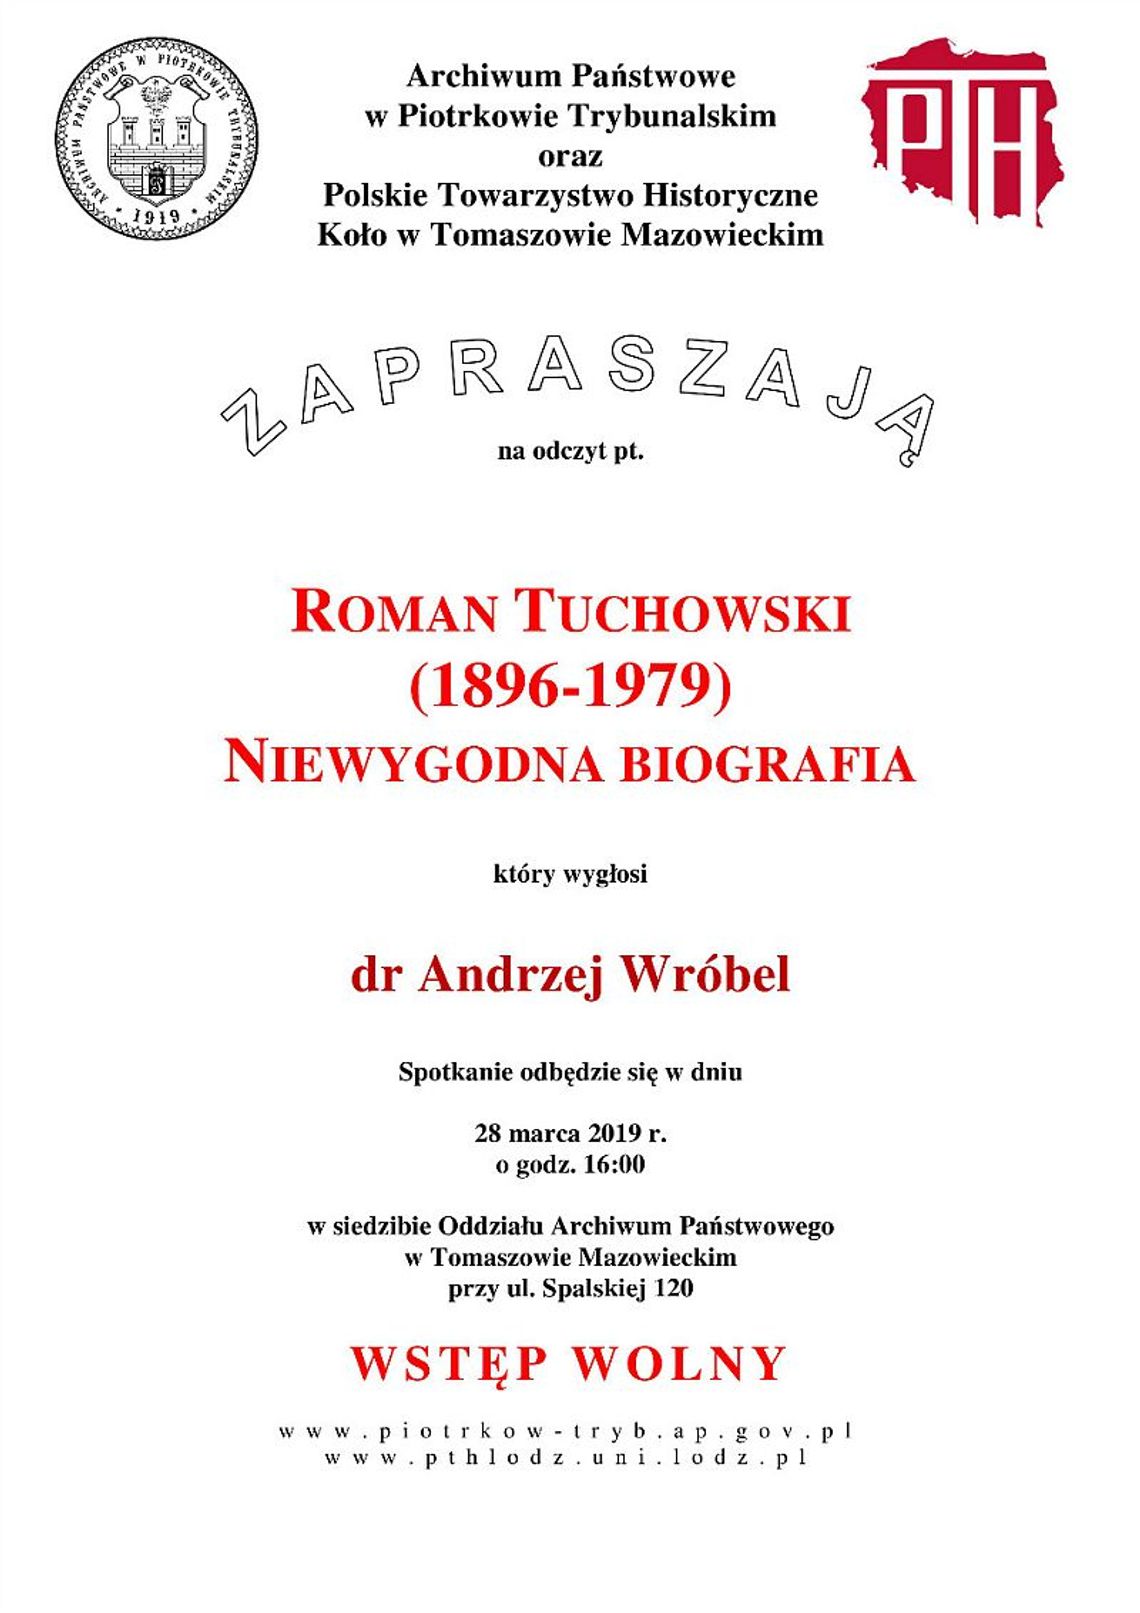 Niewygodna biografia Tuchowskiego - odczyt w Archiwum Państwowym